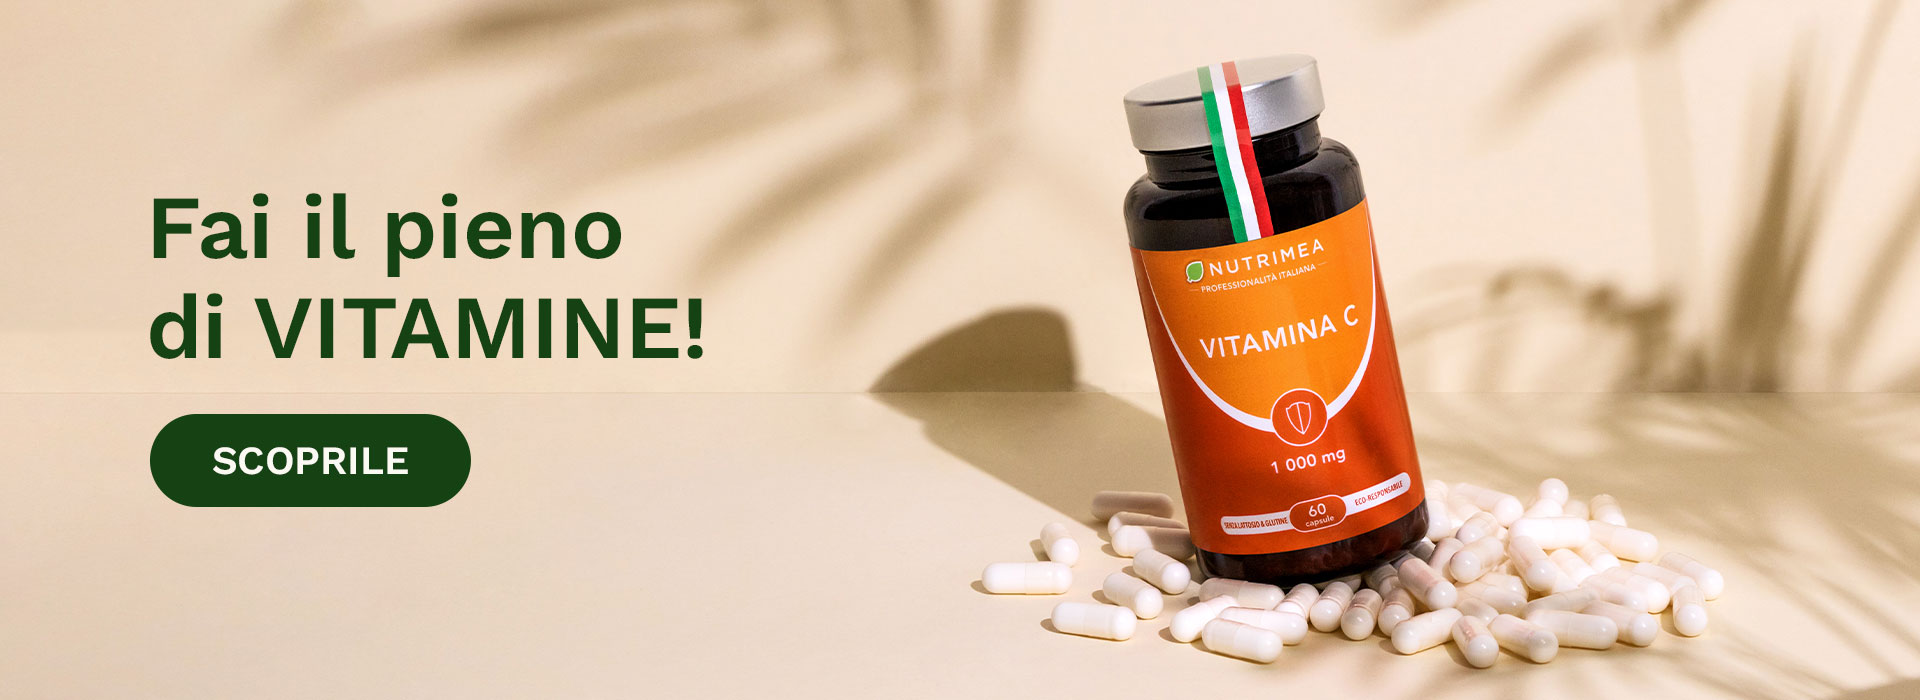 Fai il pieno di Vitamine!